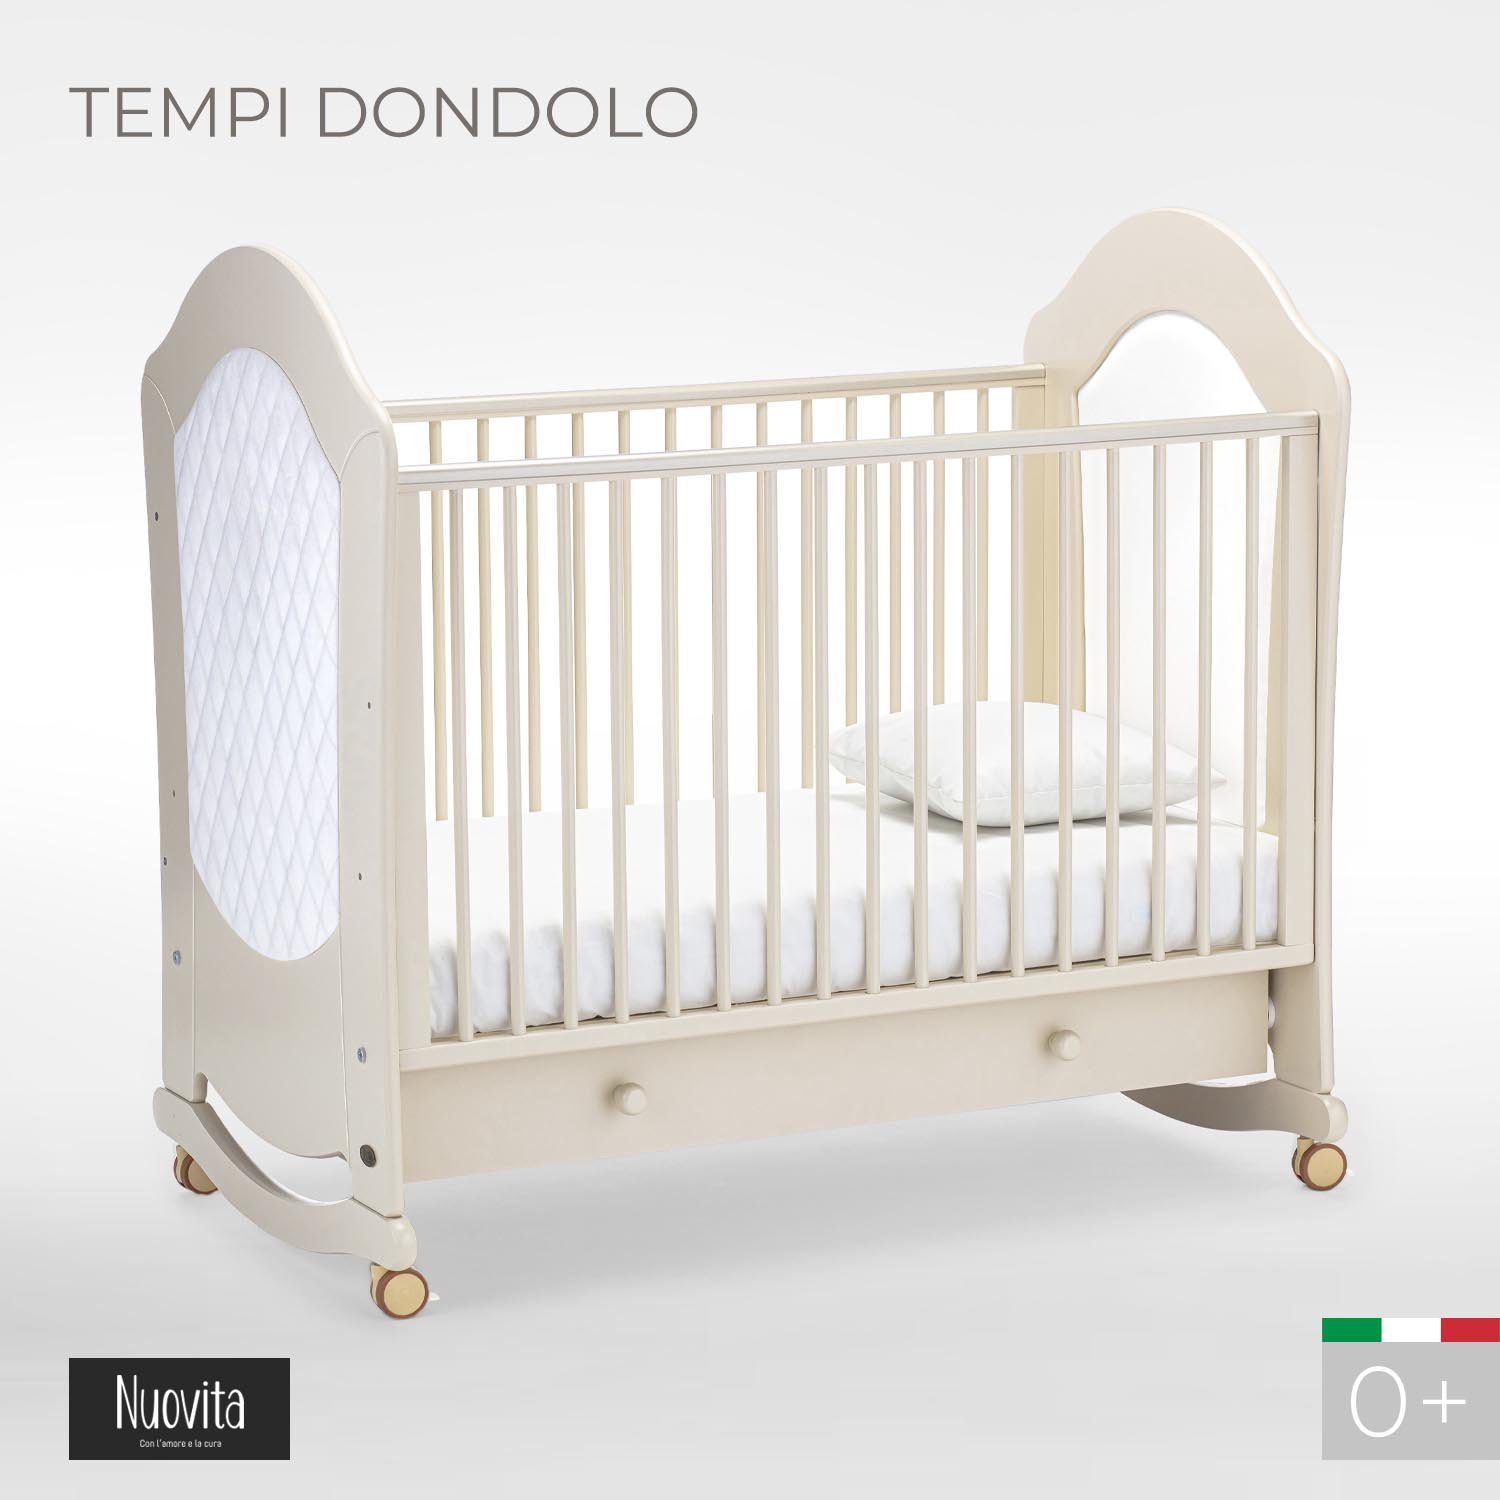 фото Детская кровать nuovita tempi dondolo avorio, слоновая кость